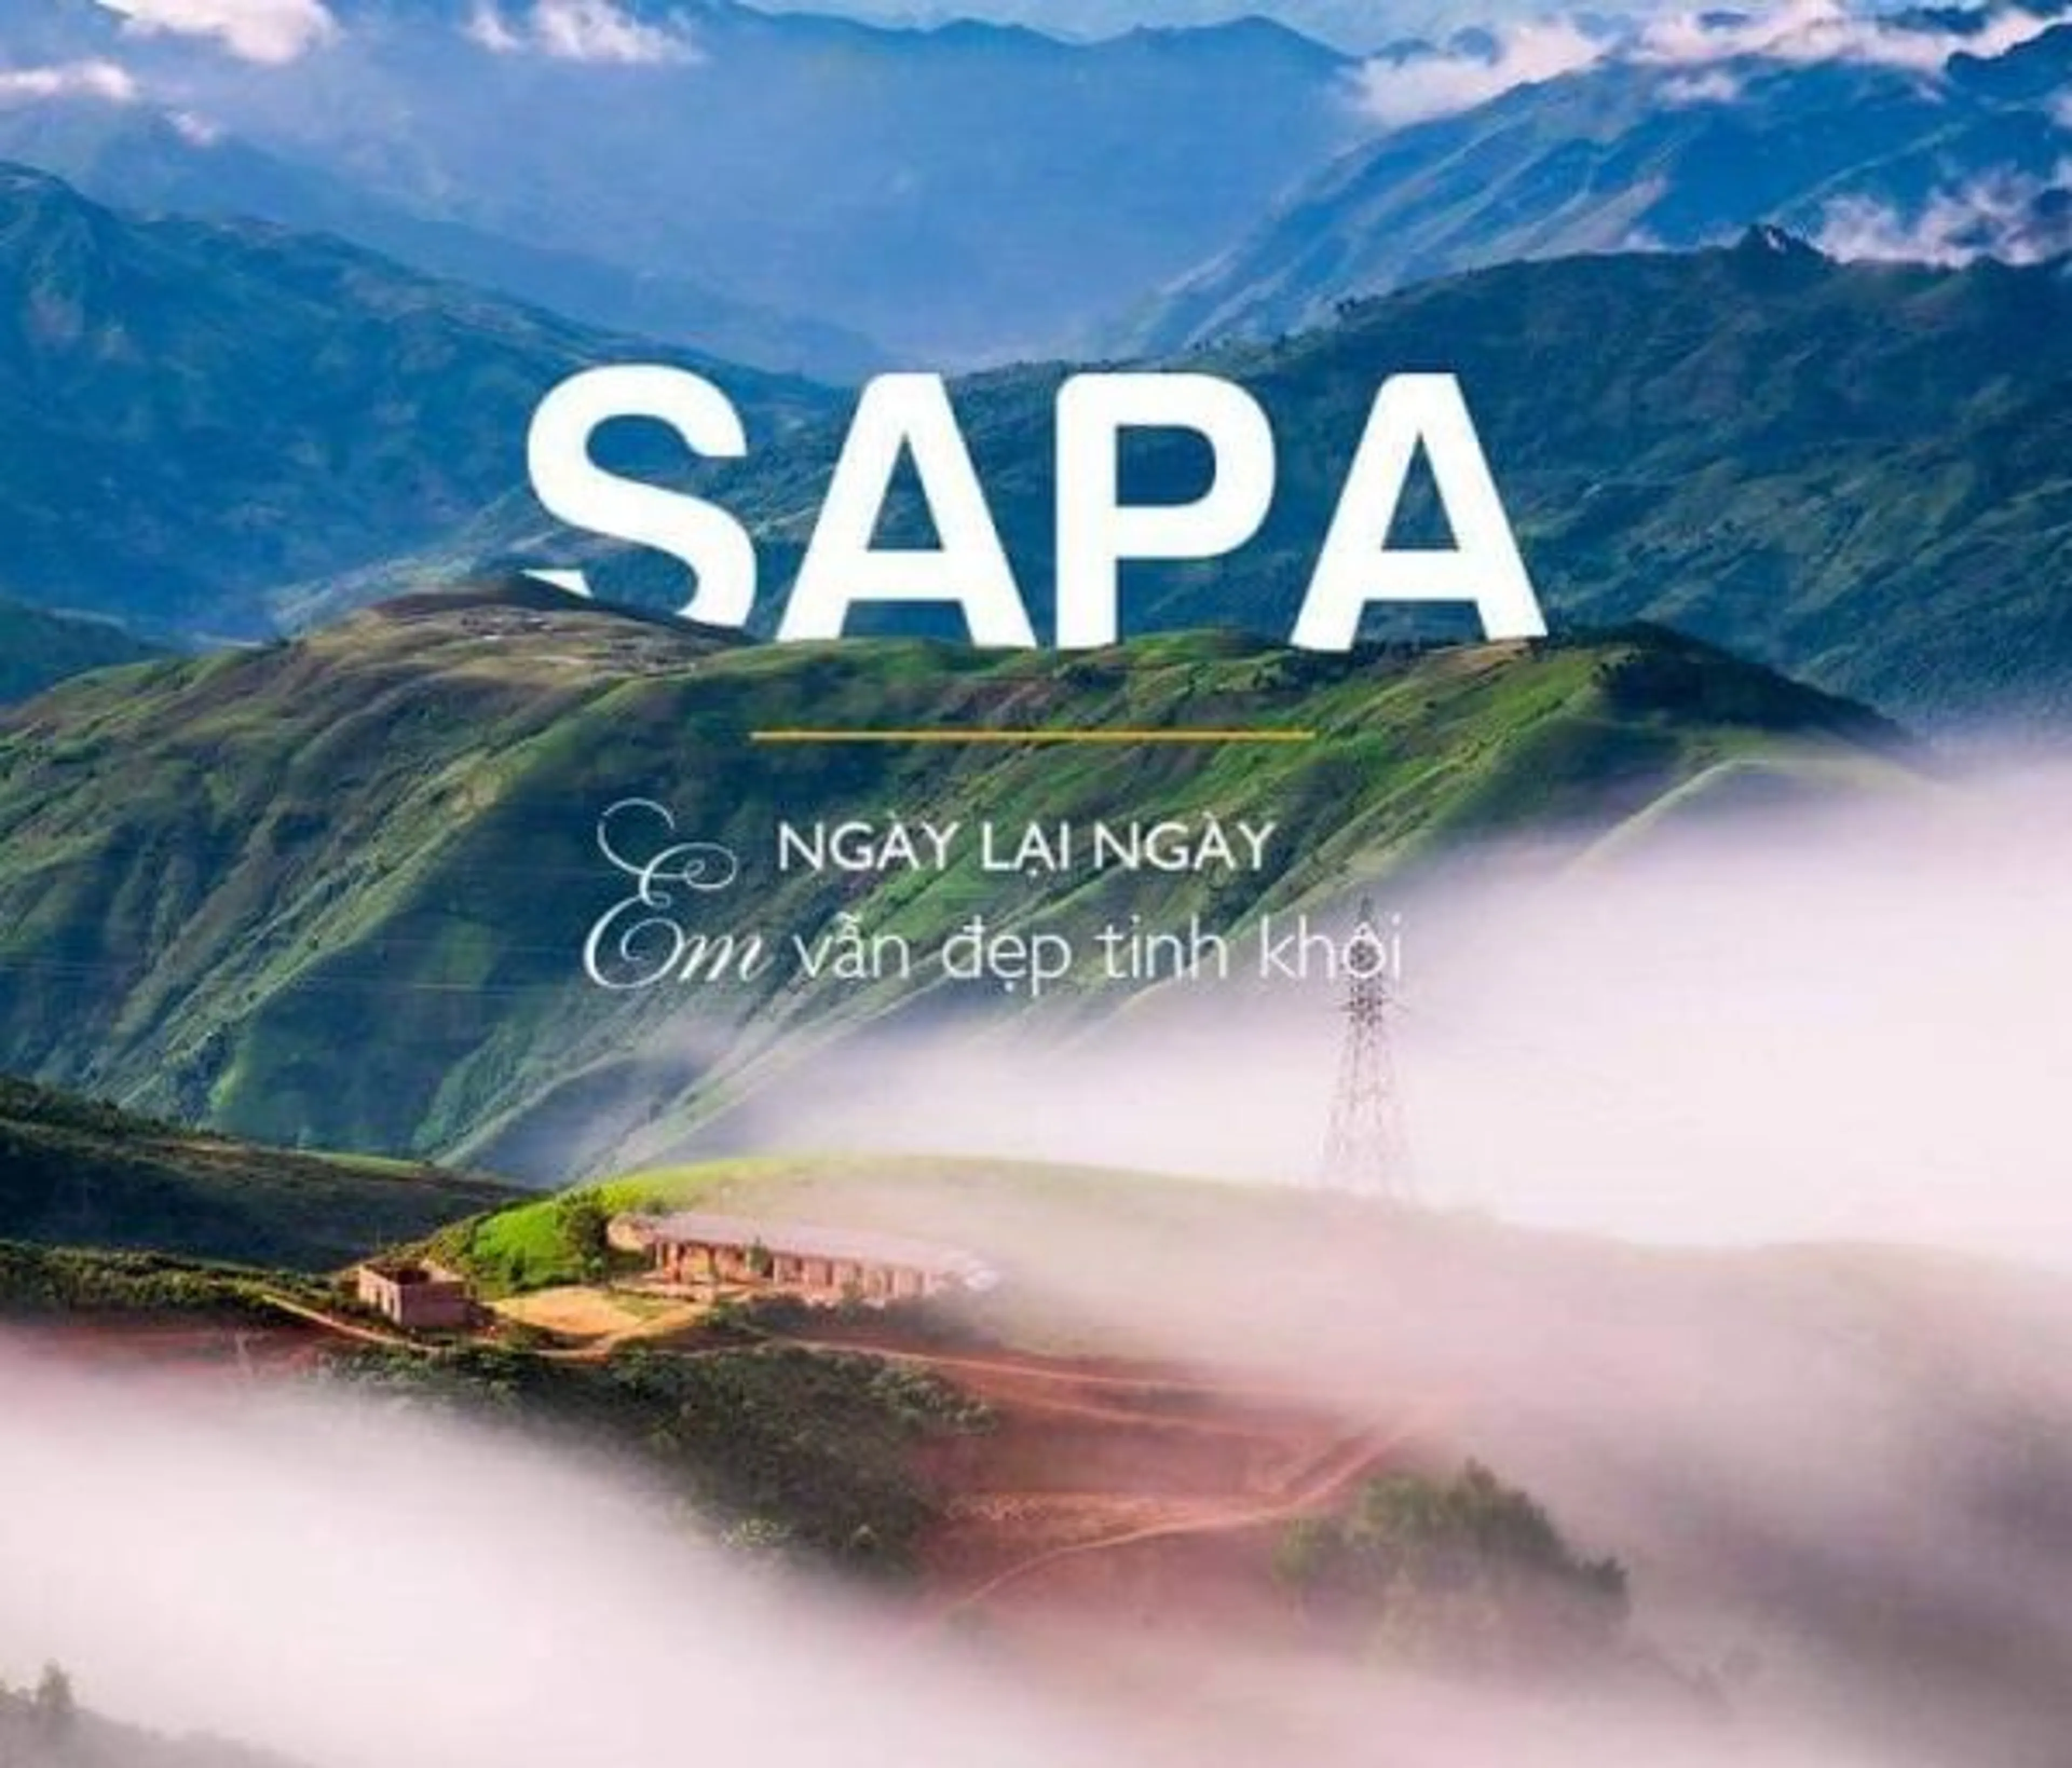 Tour Sapa & Hà Khẩu - Ngày lại ngày em vẫn đẹp tinh khôi